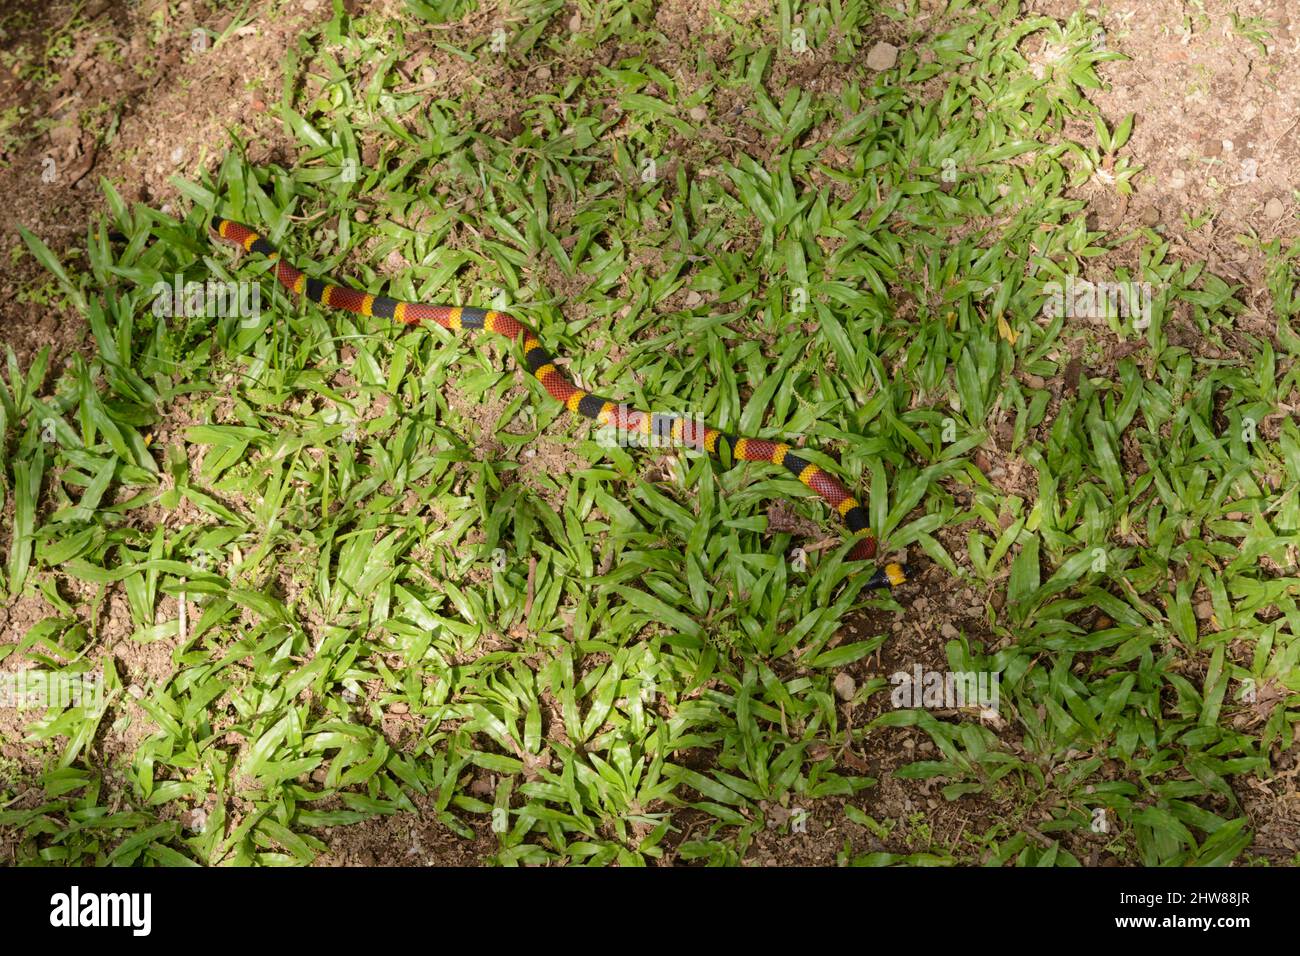 Una serpiente coral venenosa de Costa Rica (Micrurus mosquitos) se desliza a lo largo de la hierba en Costa Rica, América Central ... más Foto de stock